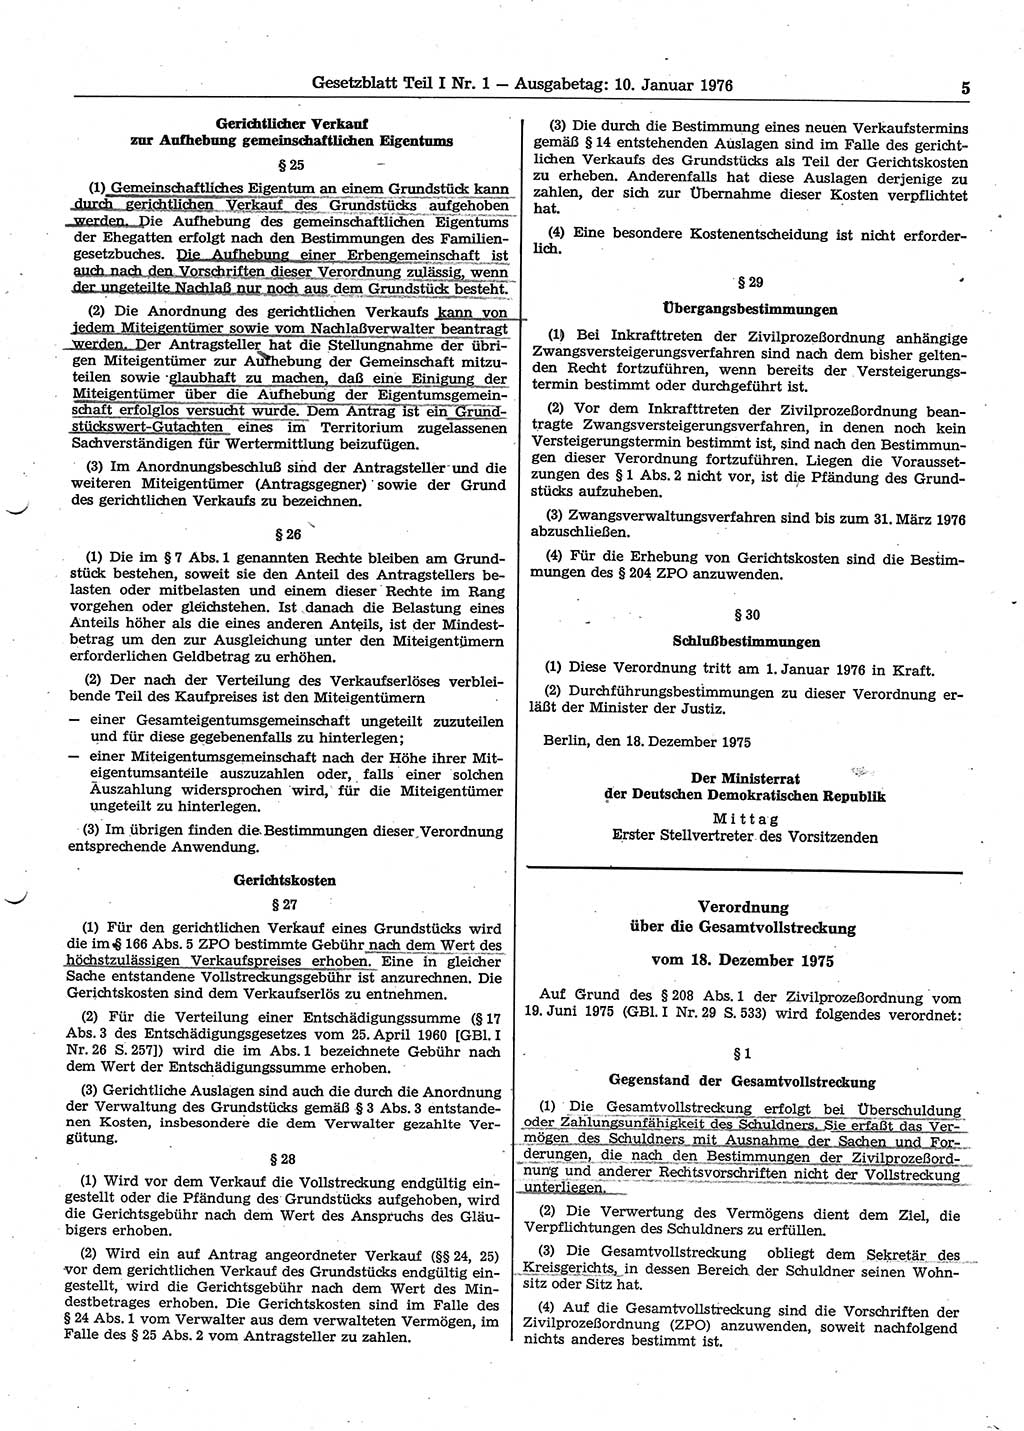 Gesetzblatt (GBl.) der Deutschen Demokratischen Republik (DDR) Teil Ⅰ 1976, Seite 5 (GBl. DDR Ⅰ 1976, S. 5)